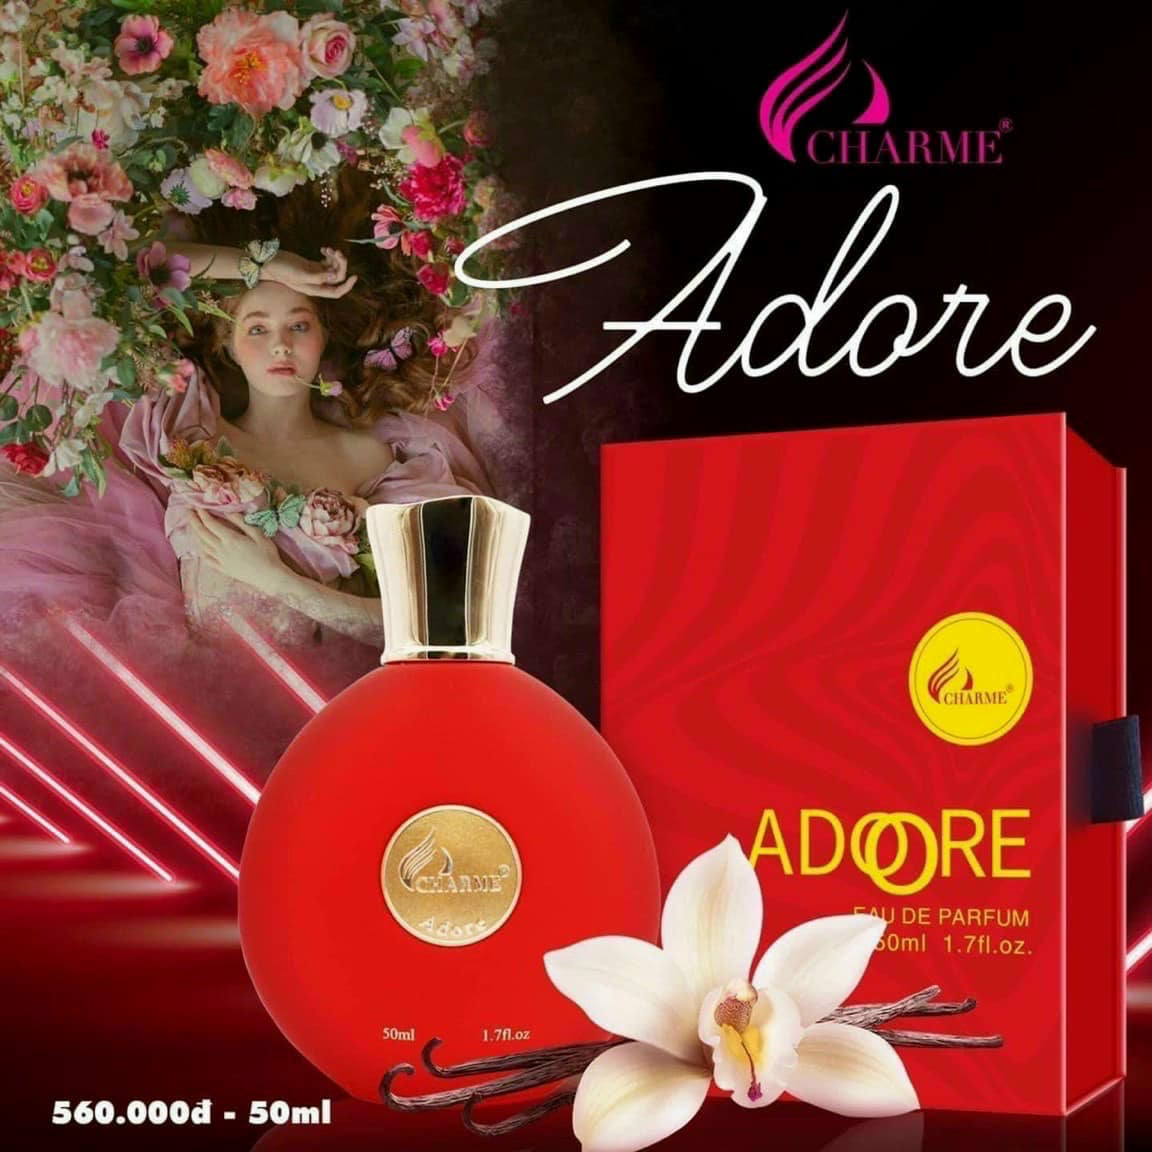 Nếu bạn là fan cuồng của hoa Nhài thì không thể bỏ lỡ mùi hương của Charme Adore